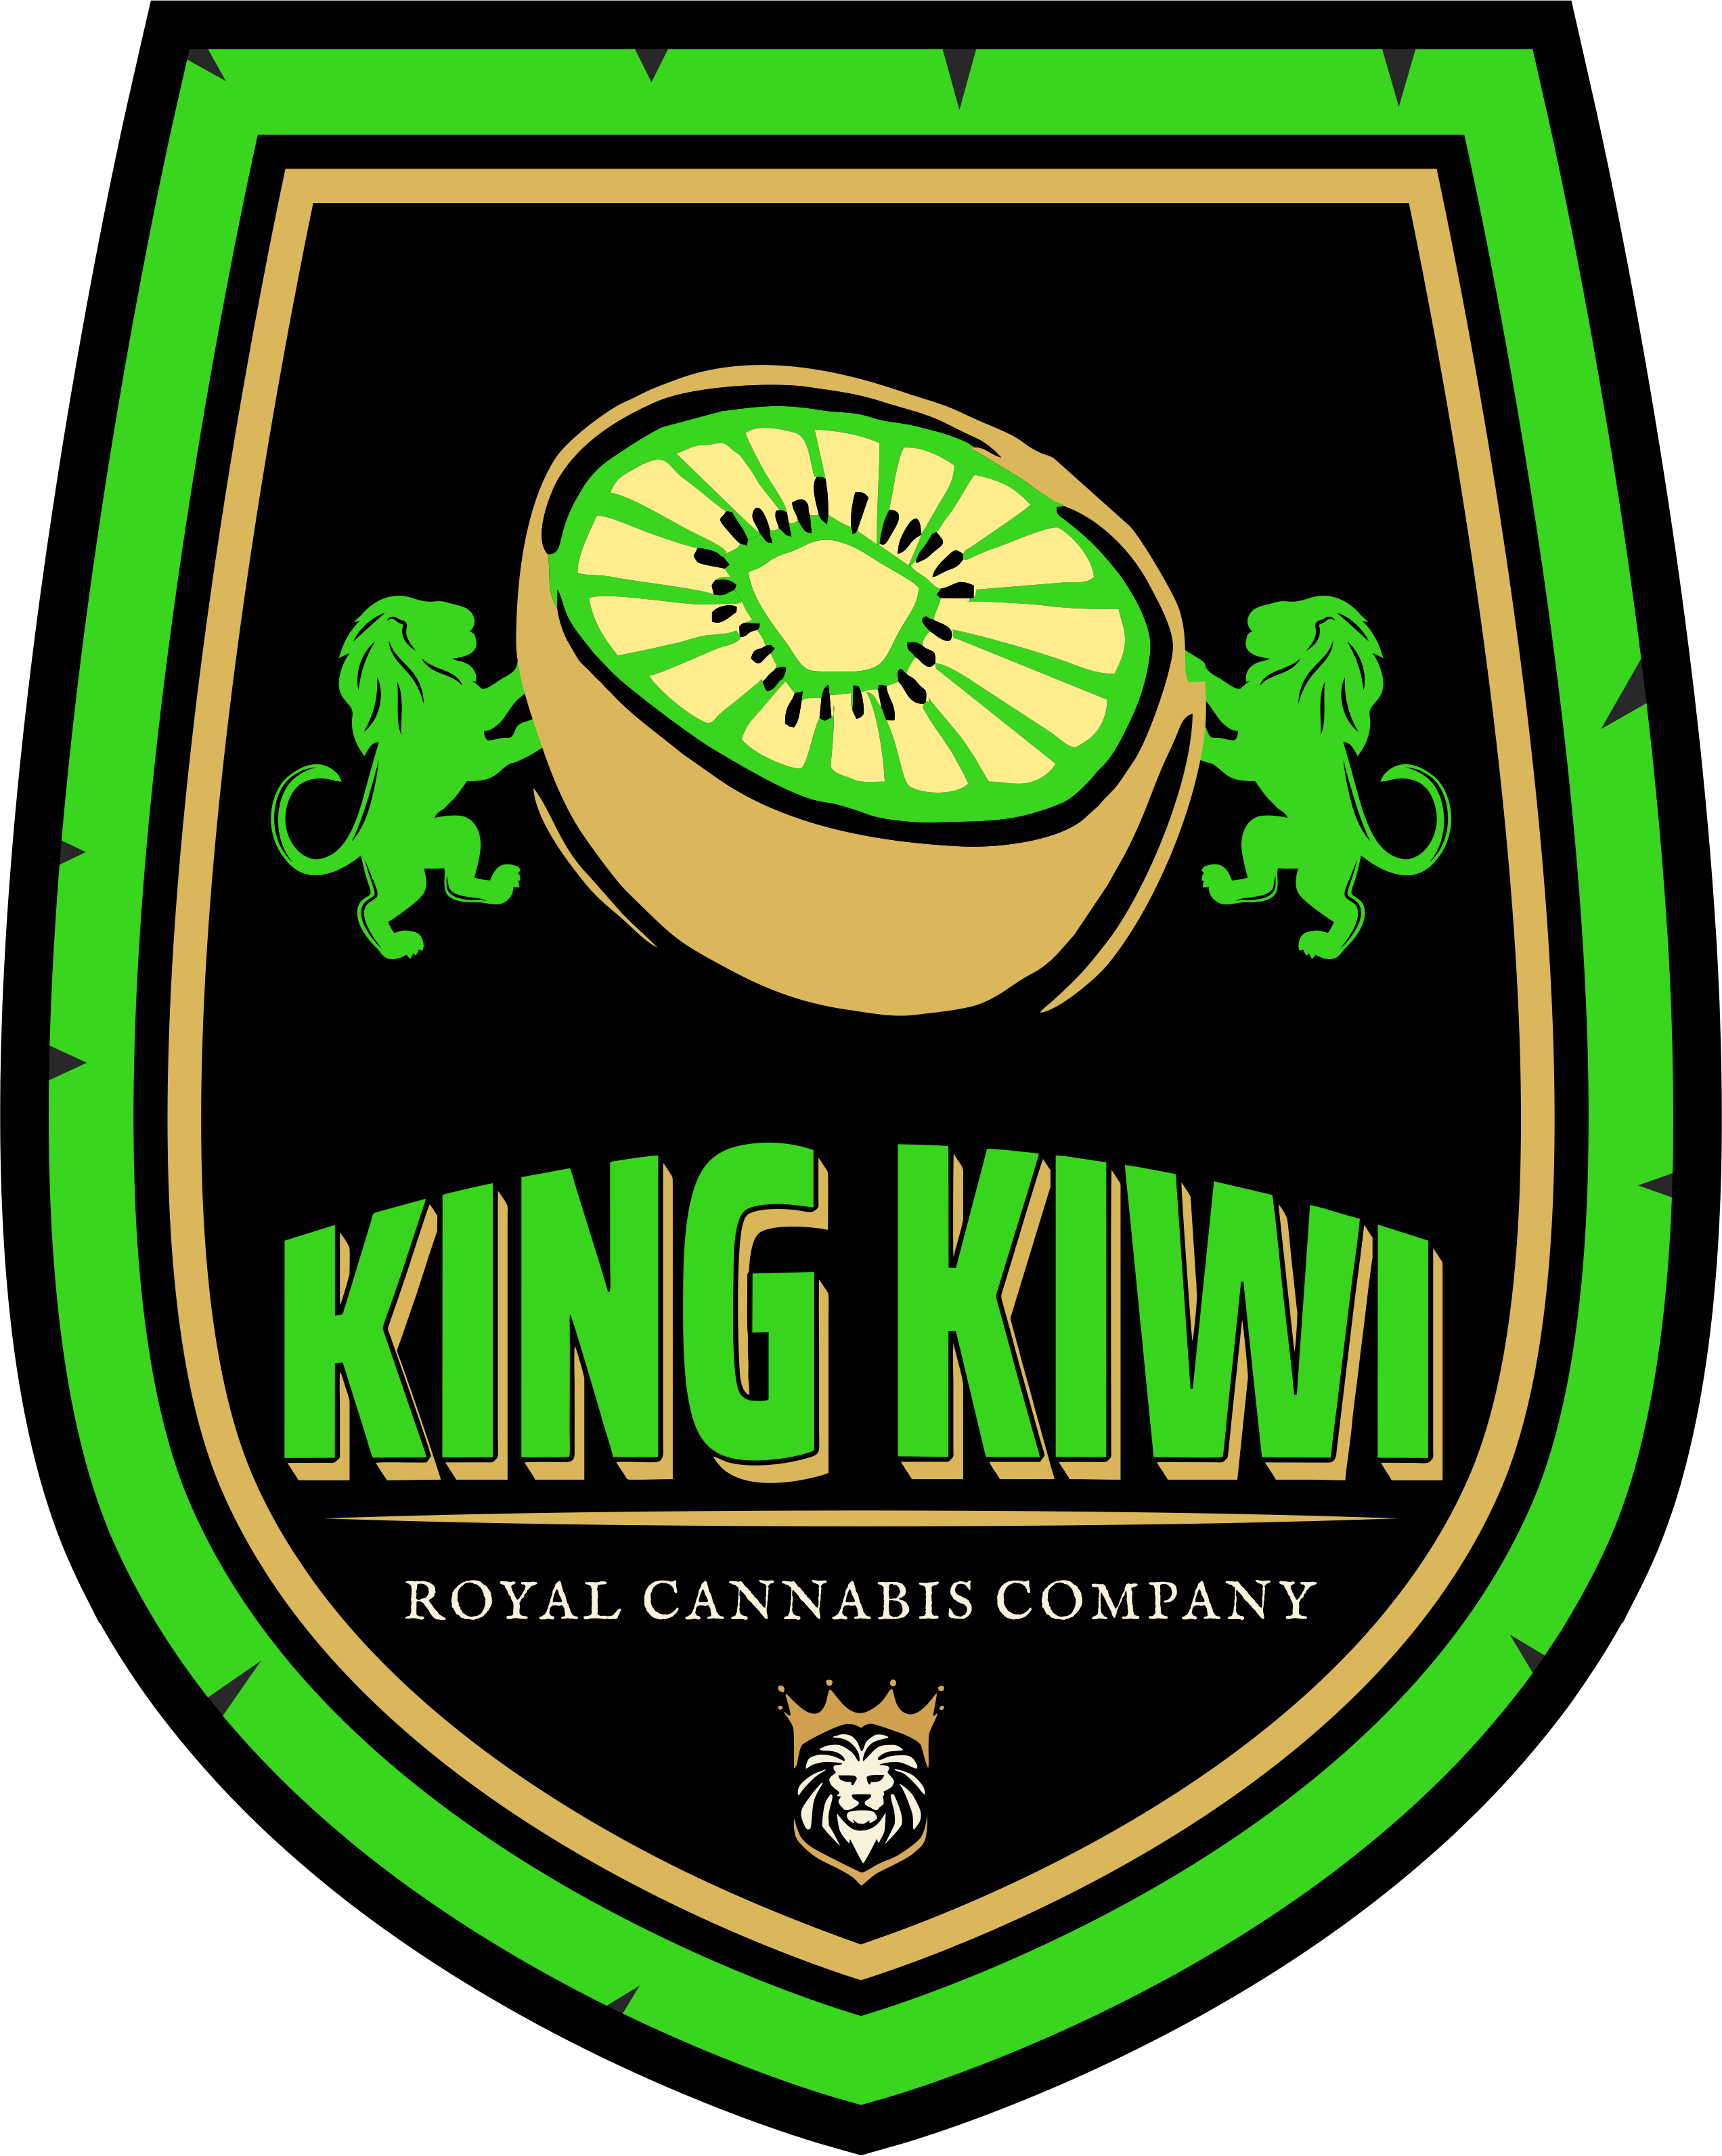 No Logo for King Kiwi